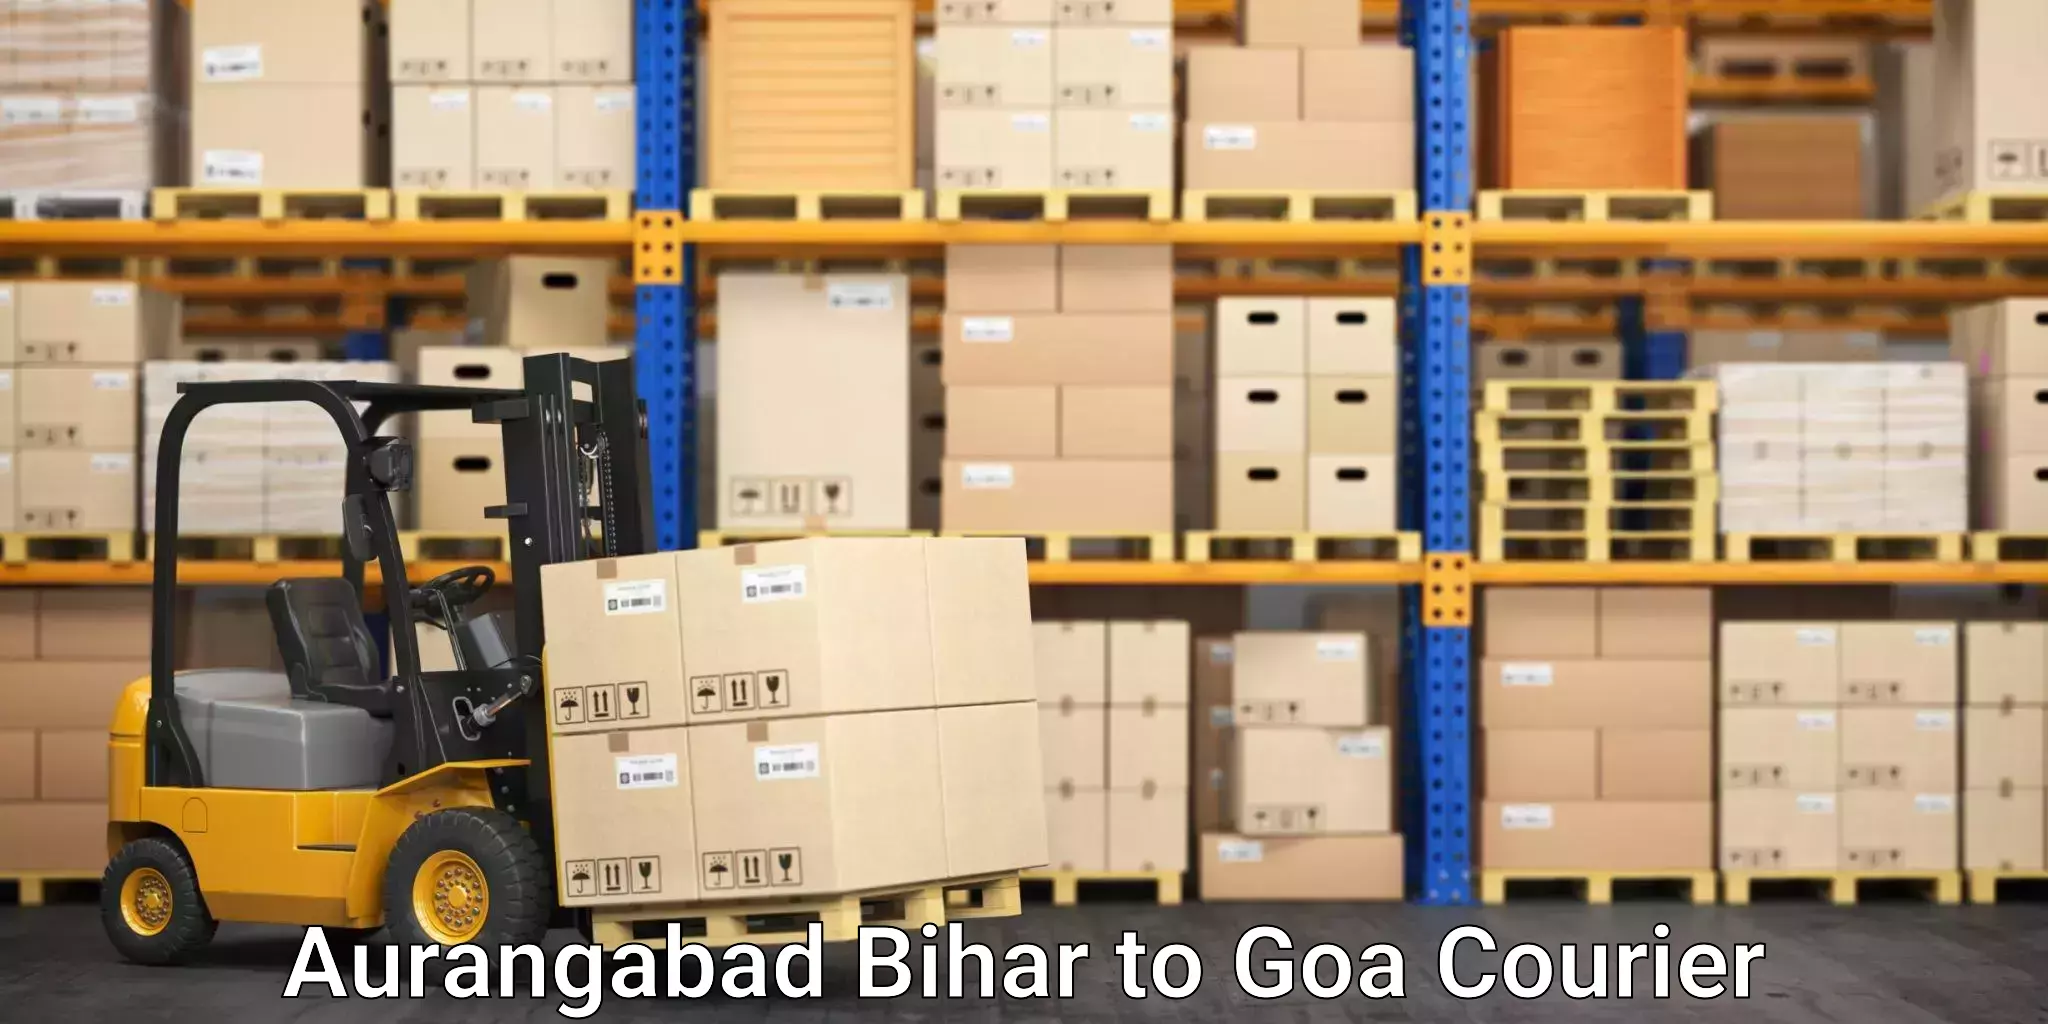 Expert moving and storage Aurangabad Bihar to Panjim